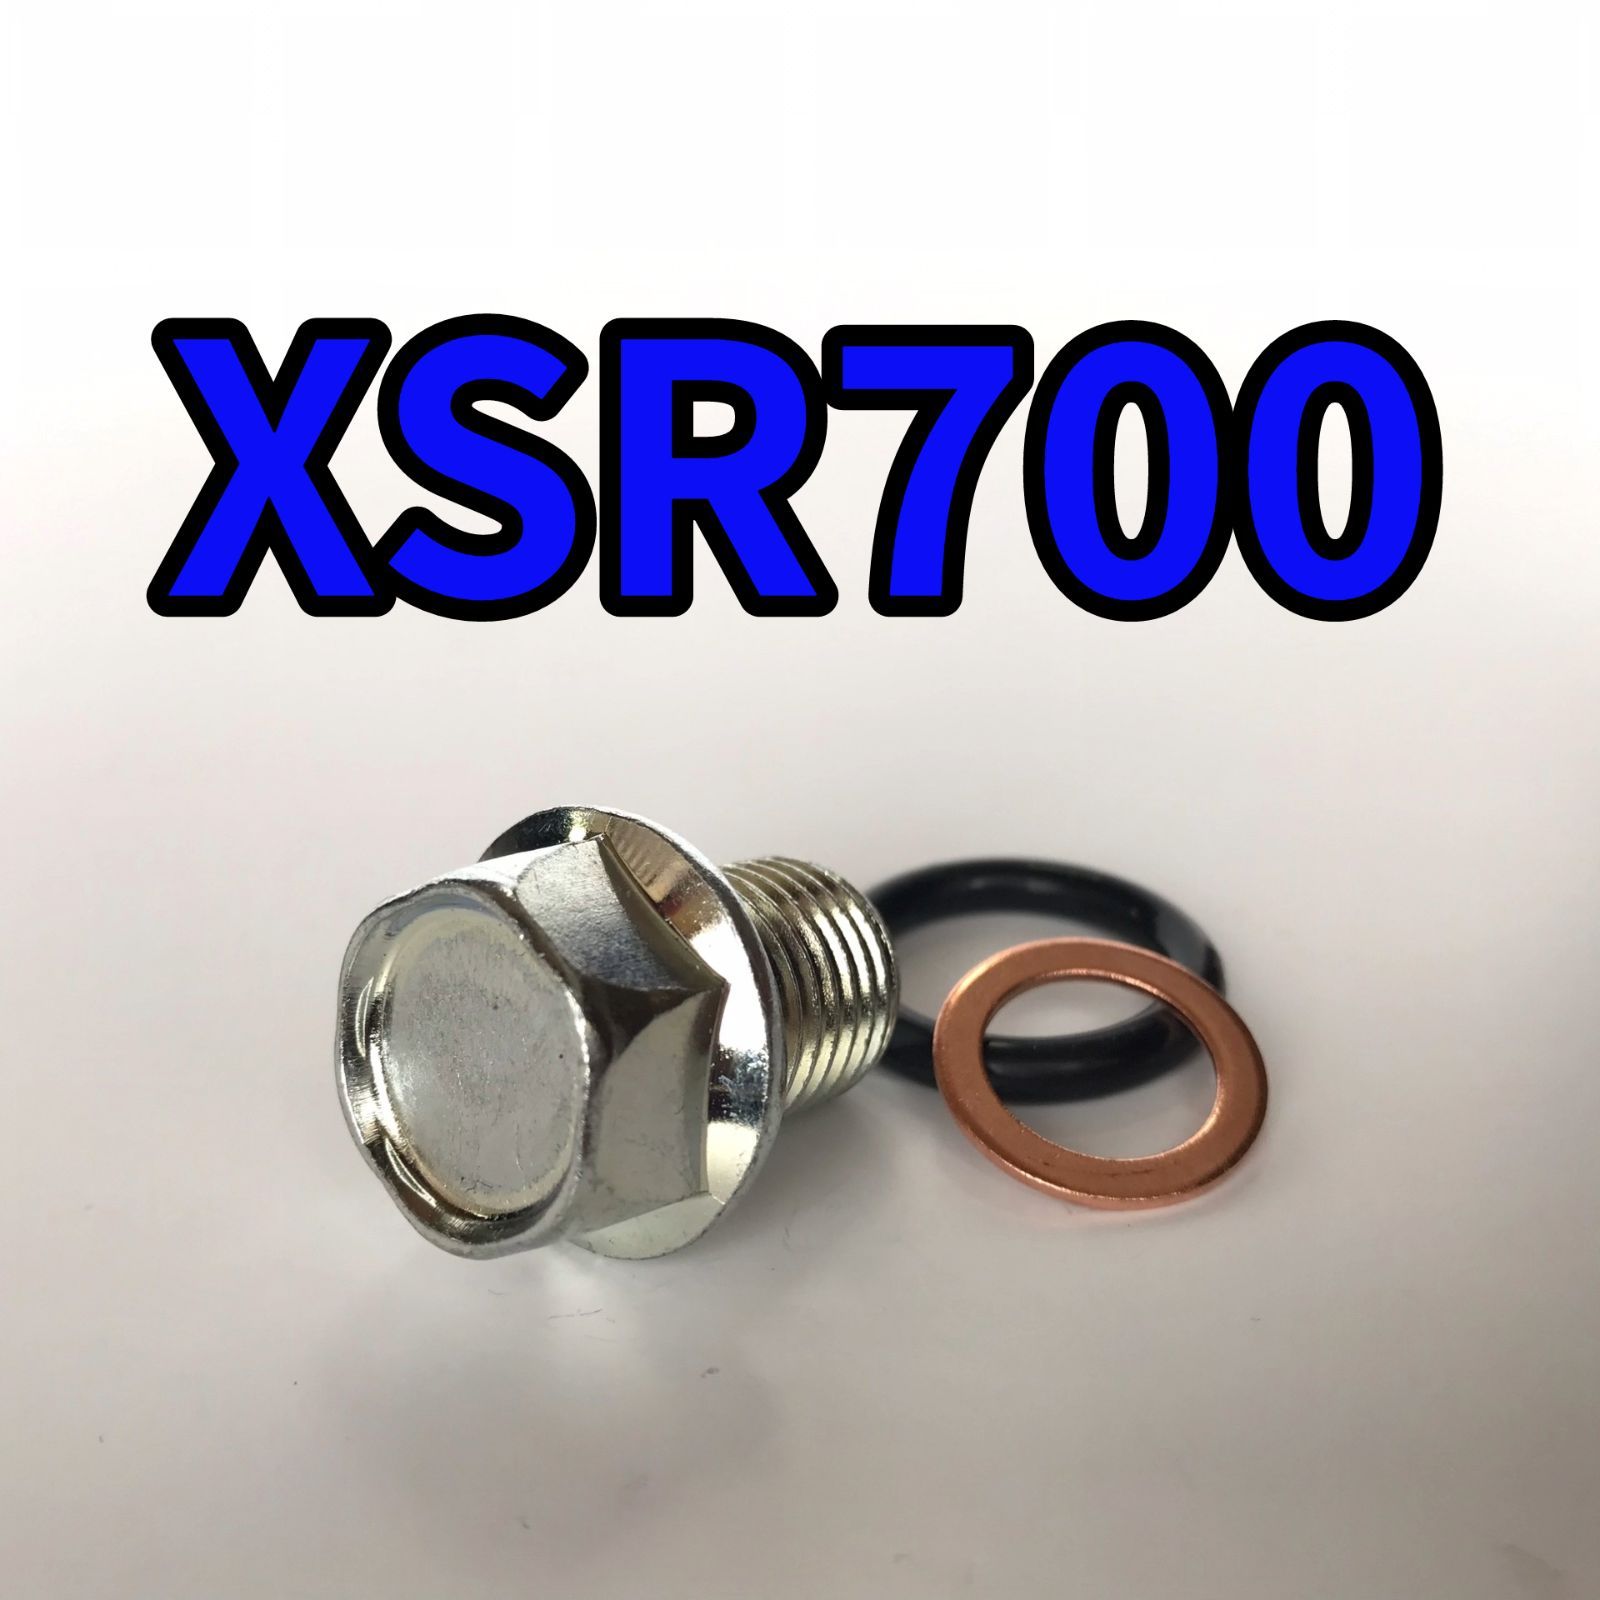 オイルドレンボルトセット XSR700 RM22J 合計3点